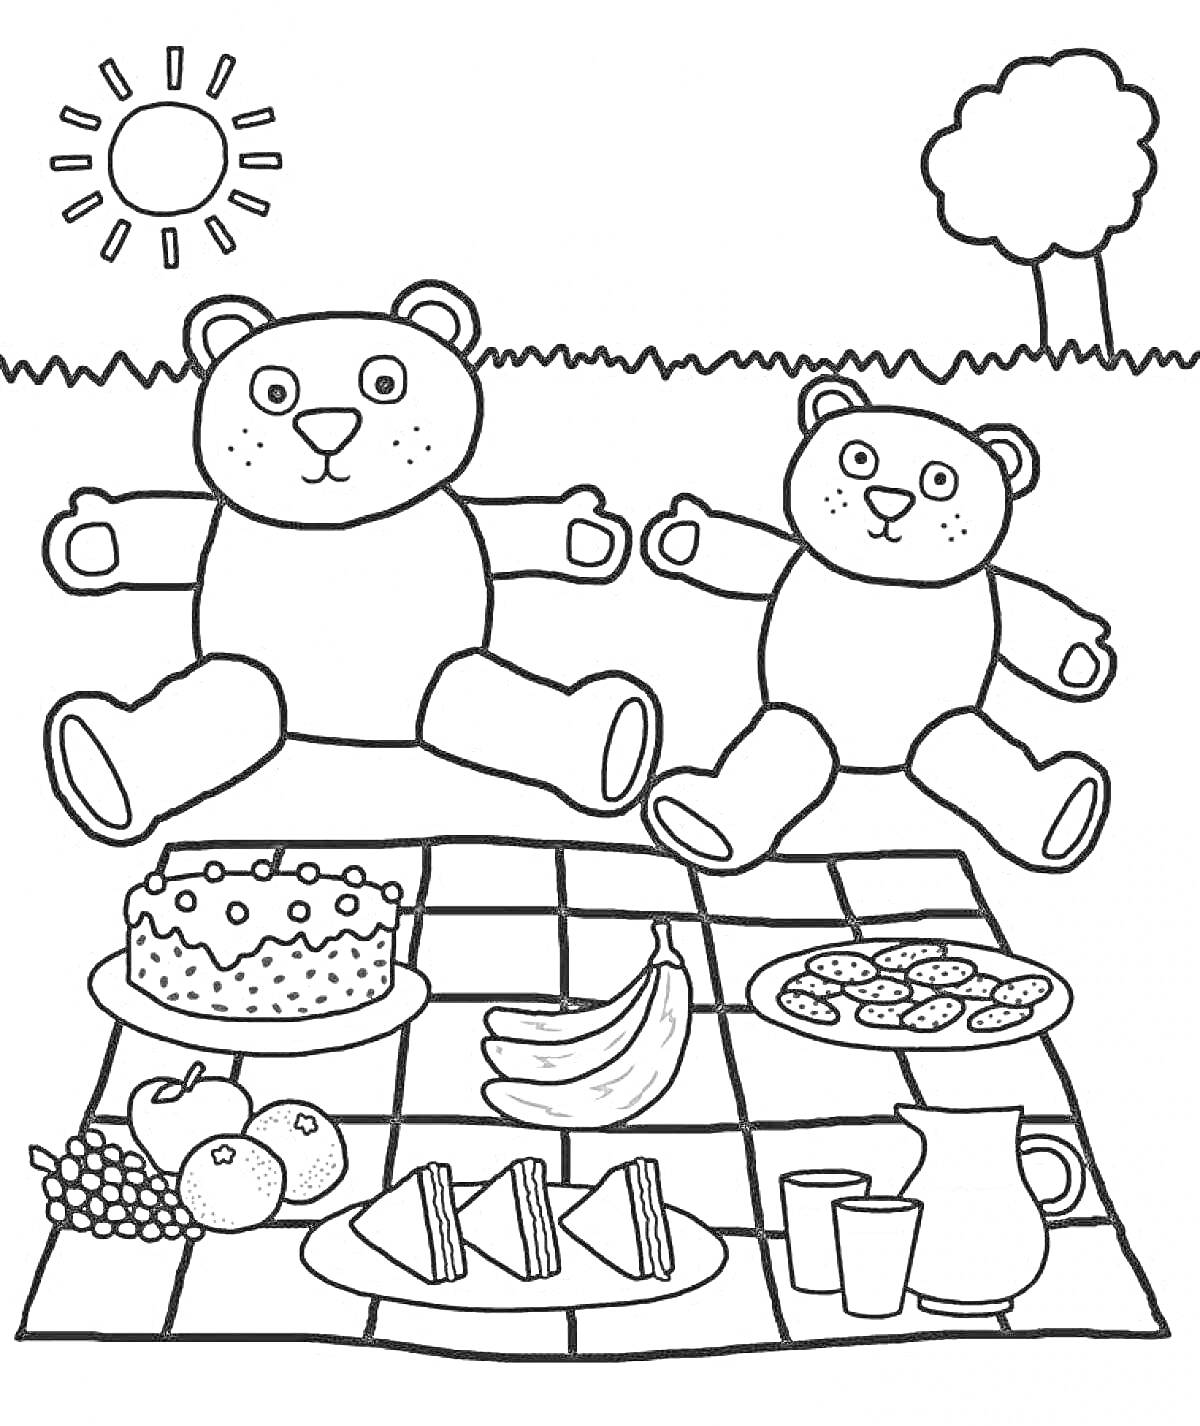 Пикник с двумя медведями, пирогом, бананами, печеньем, виноградом, яблоками, сэндвичами, кувшином и двумя стаканами